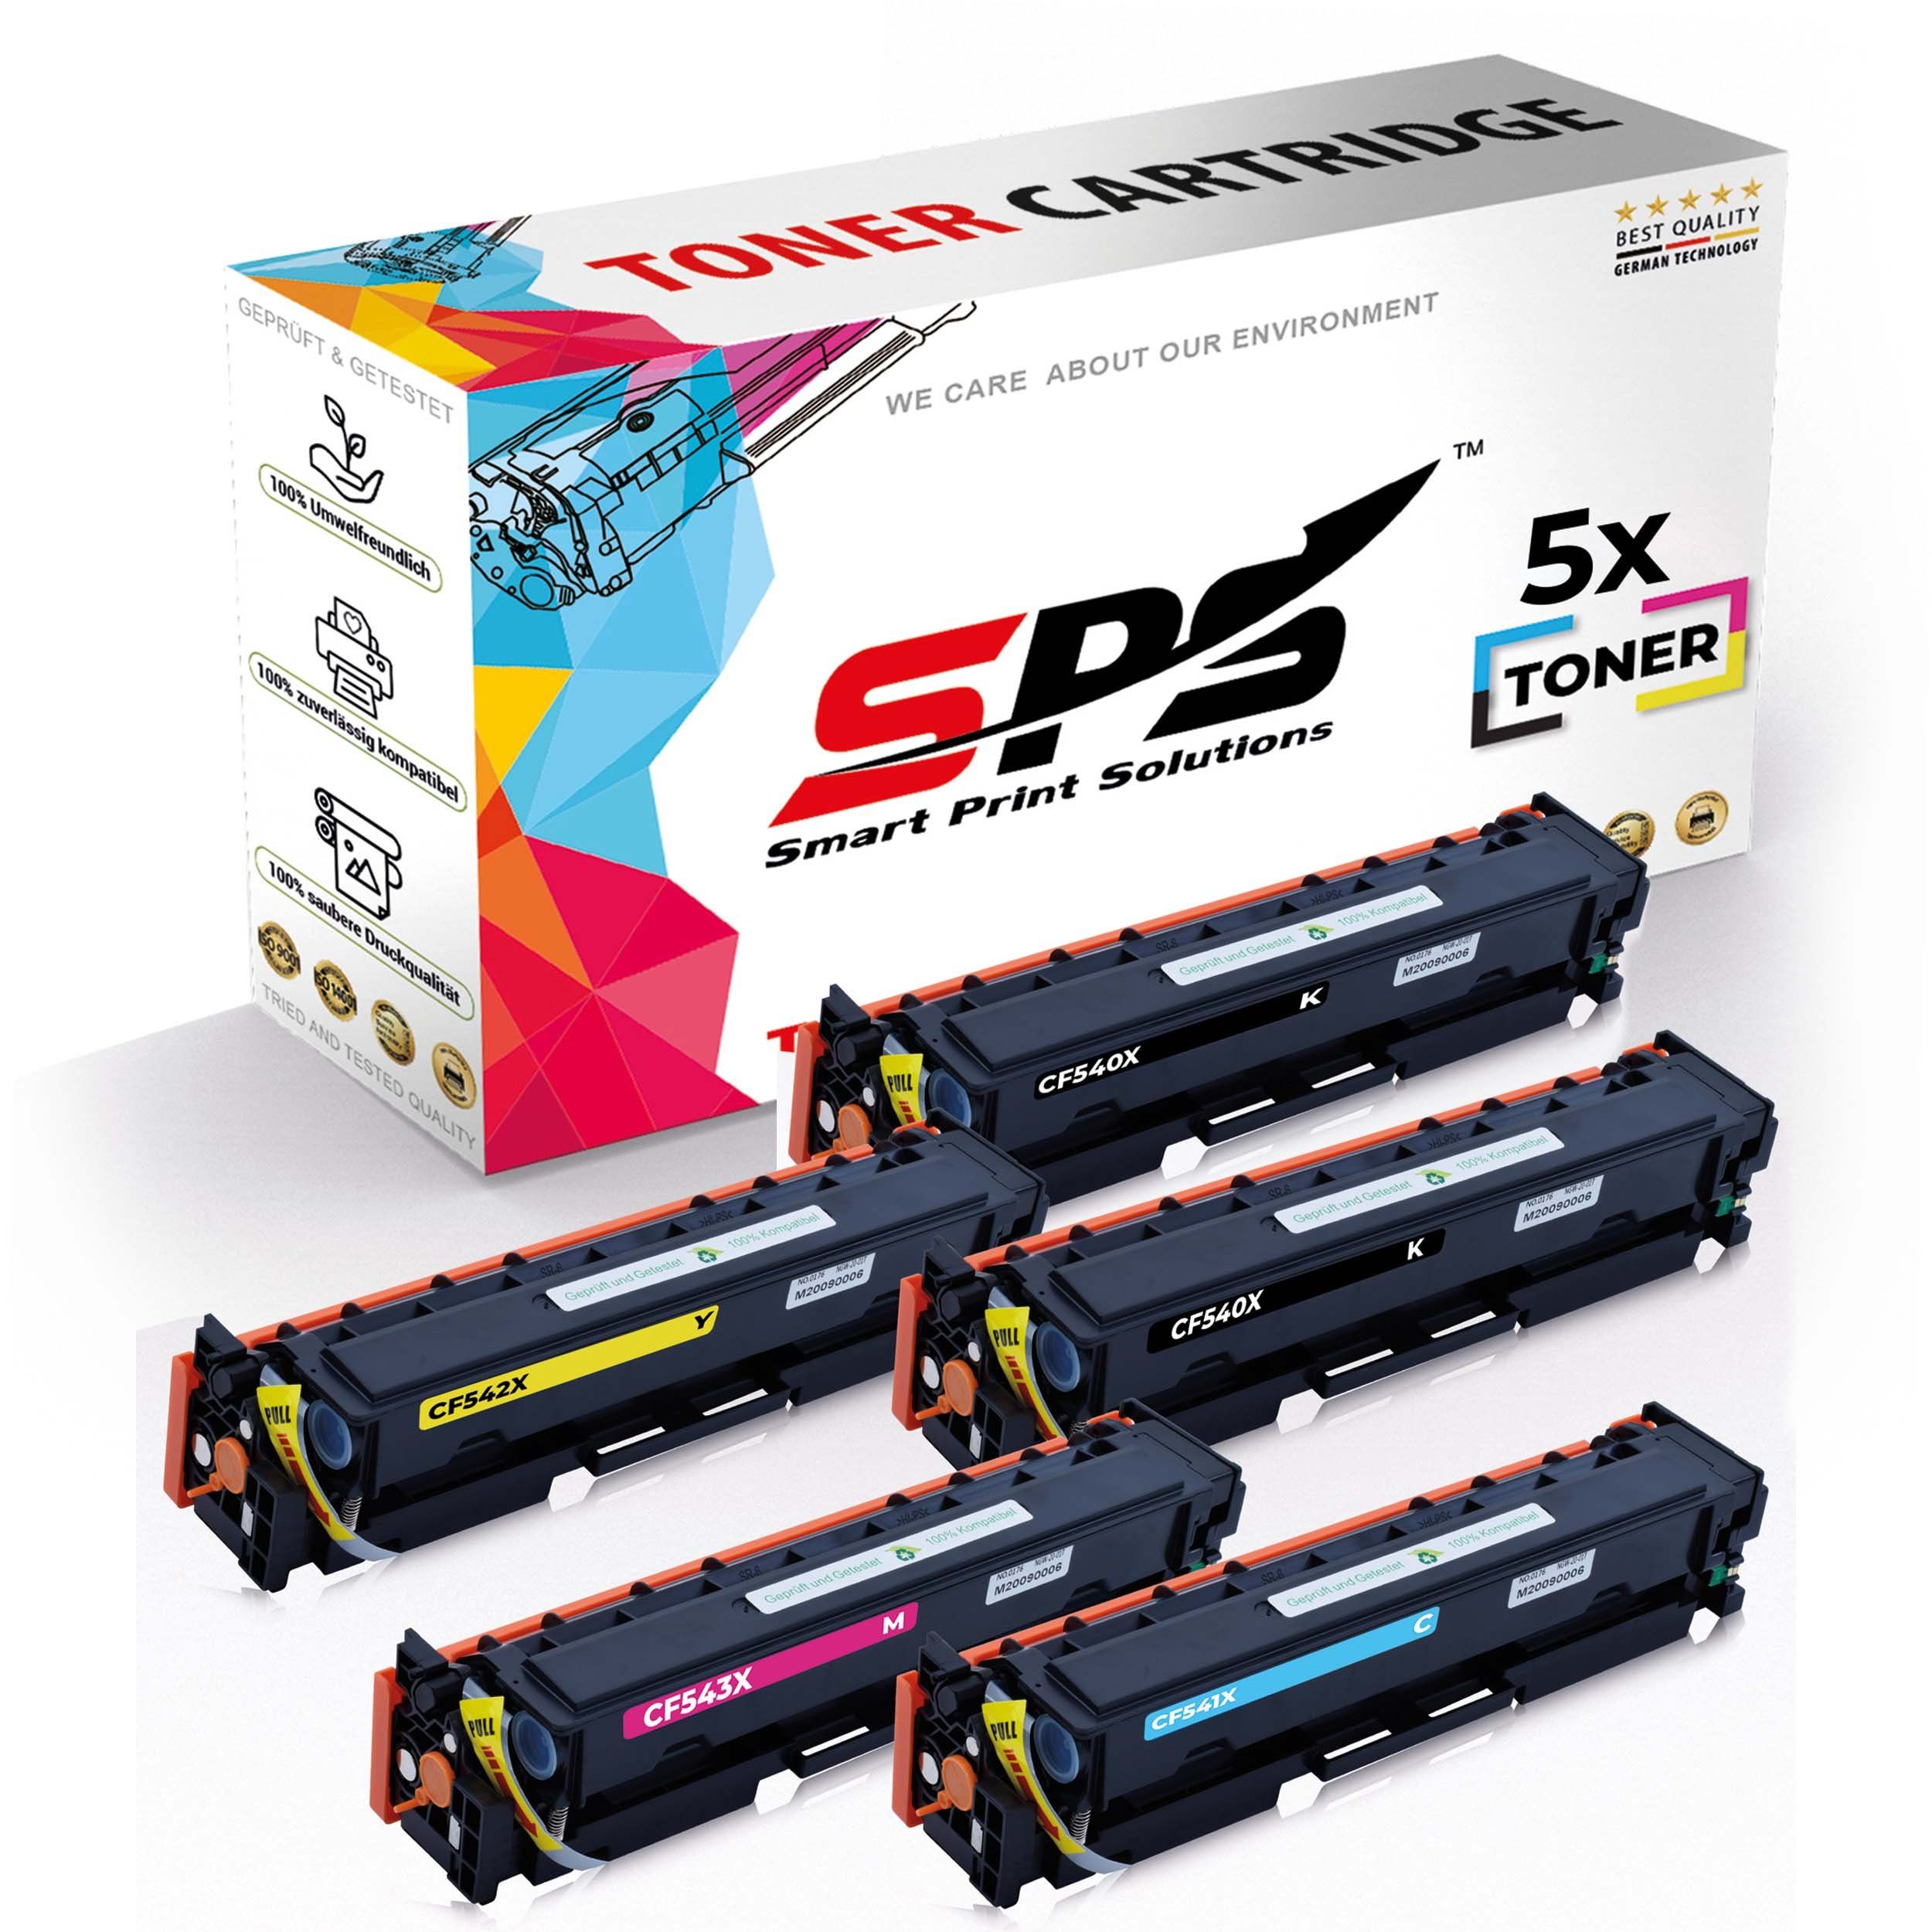 SPS Tonerkartusche 5x Multipack Set Kompatibel für HP Color LaserJet, (5er Pack, 5x Toner)